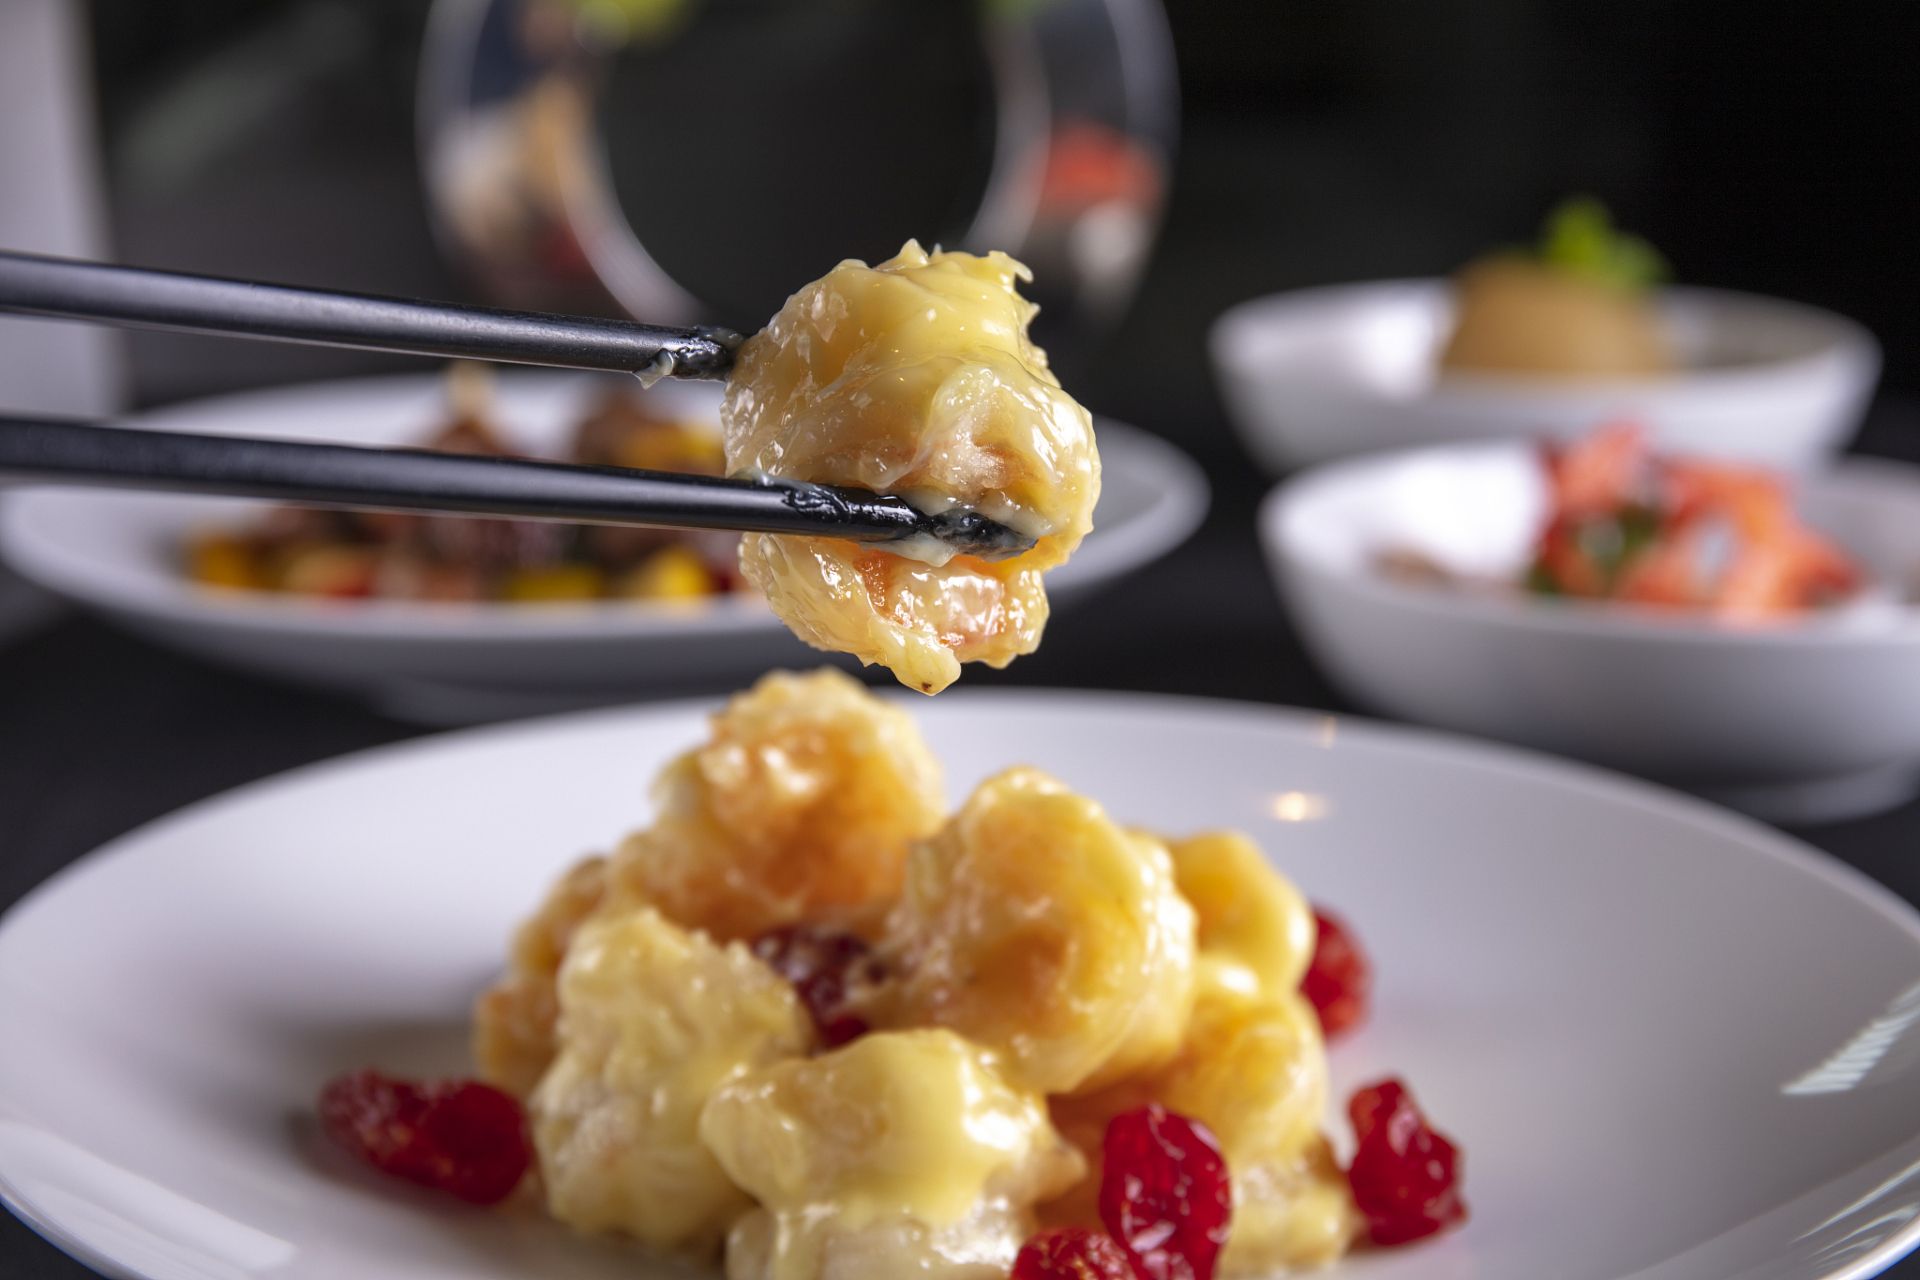 凤梨虾球是一道中式菜肴,它的制作过程需要经过多个步骤,其中最为重要